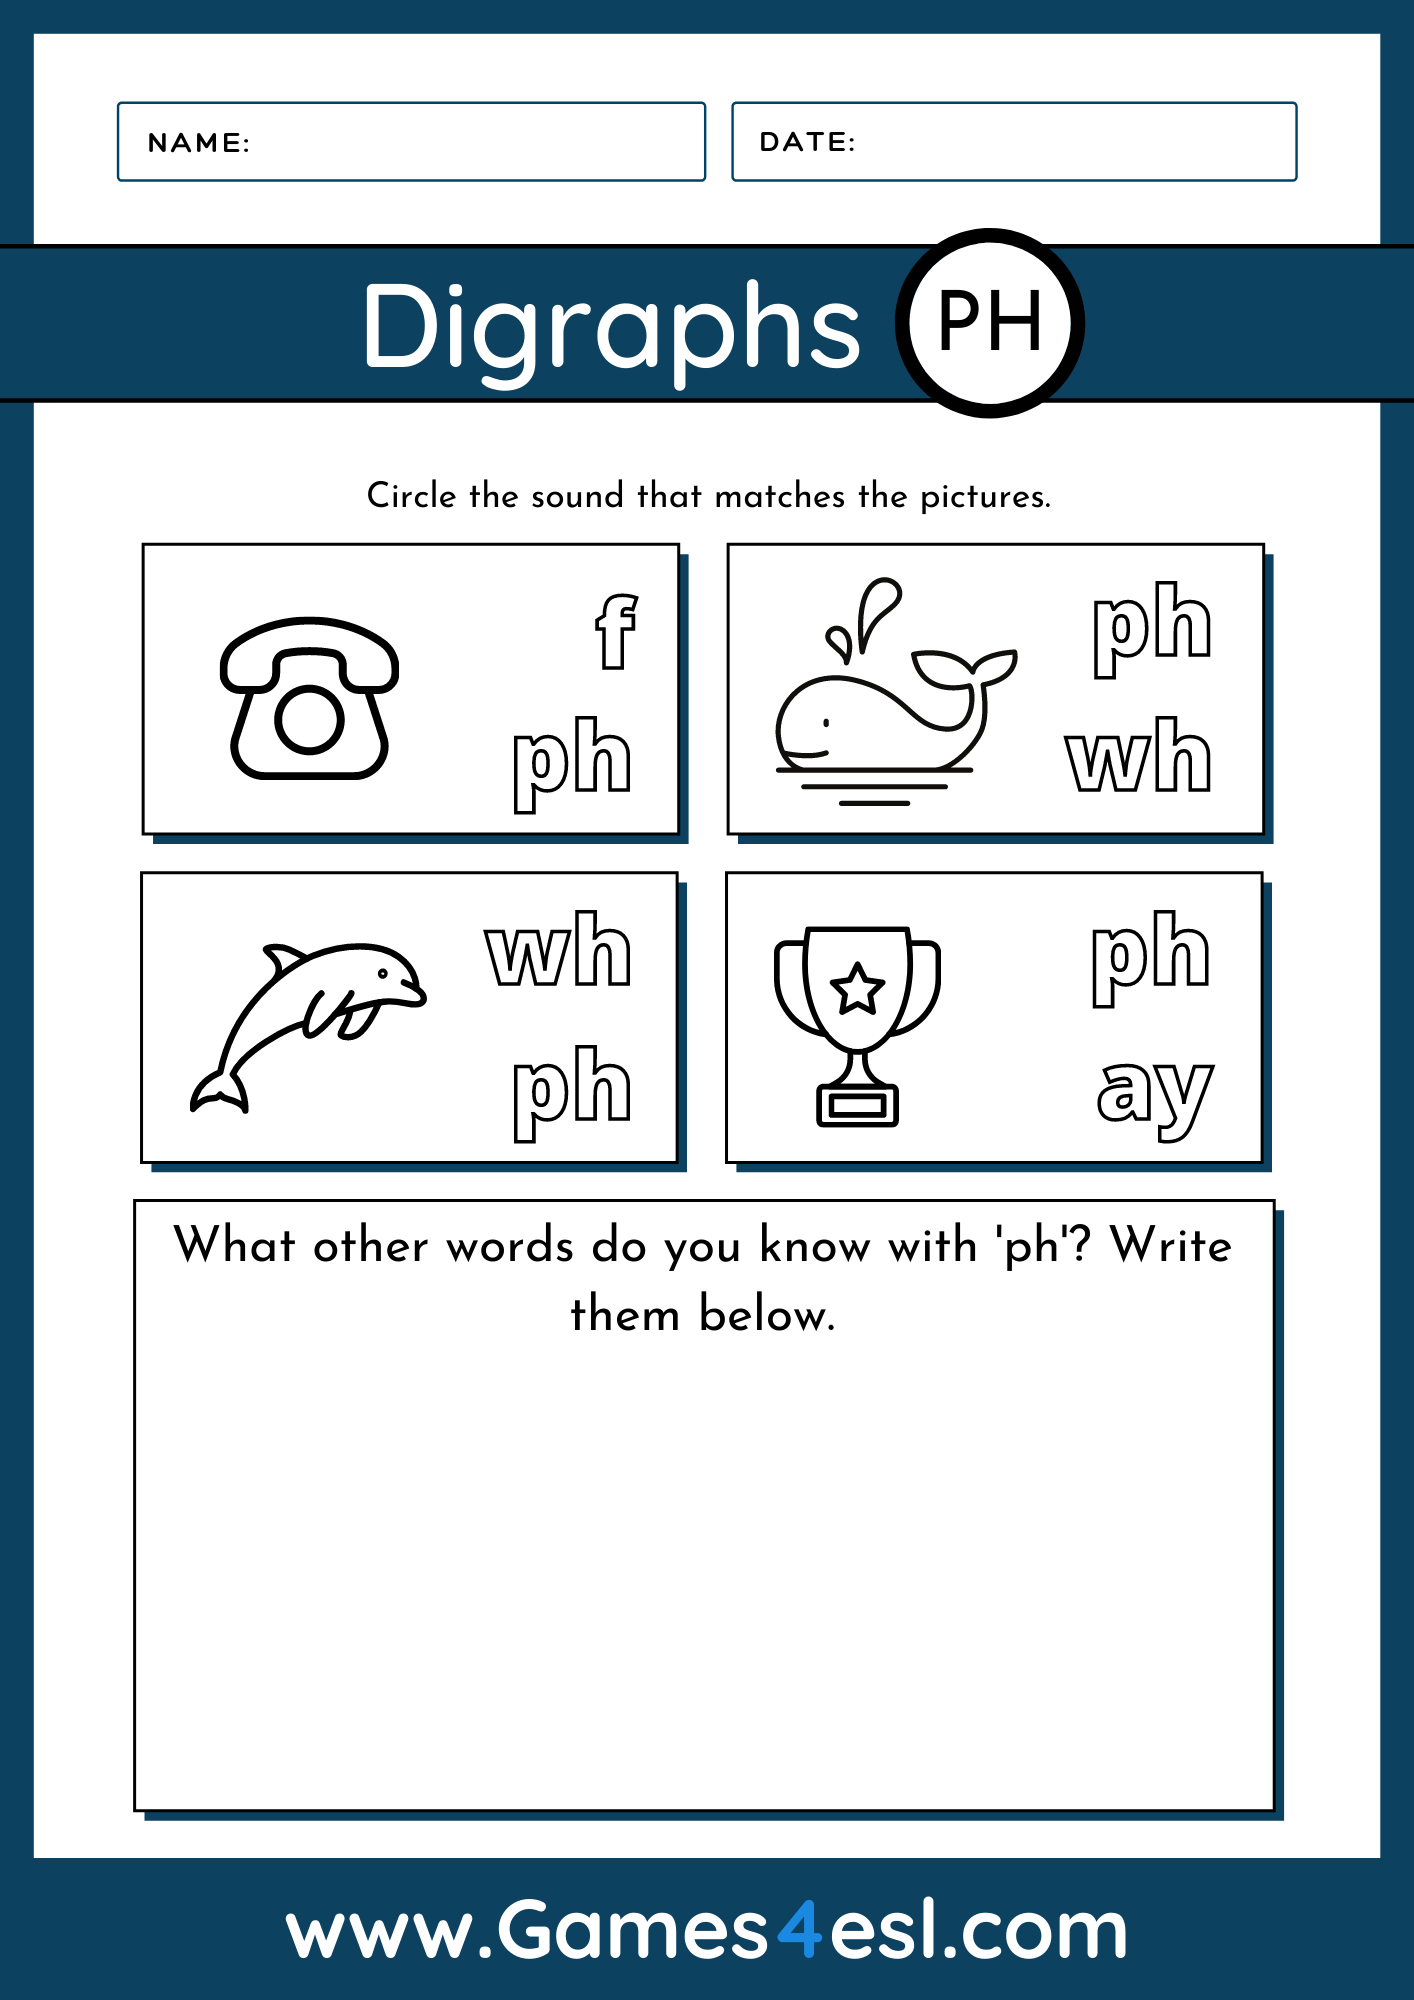 Ph Digraph Worksheet